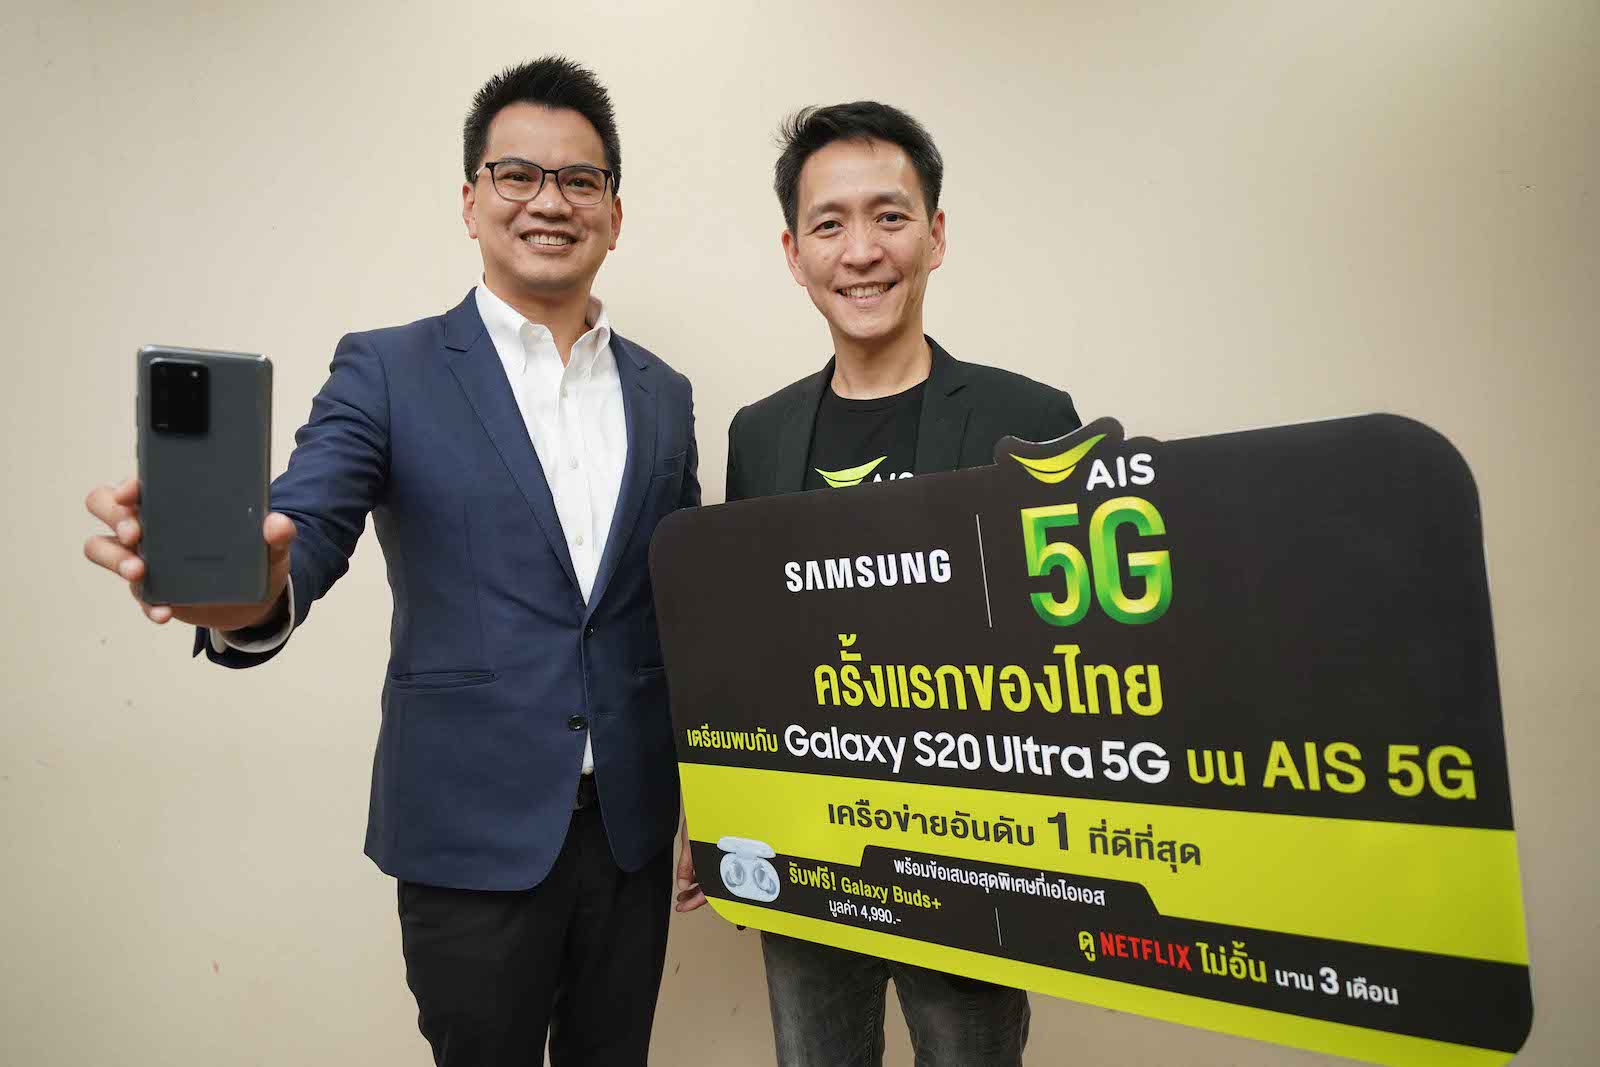 AIS 5G Samsung Galaxy S20 Ultra